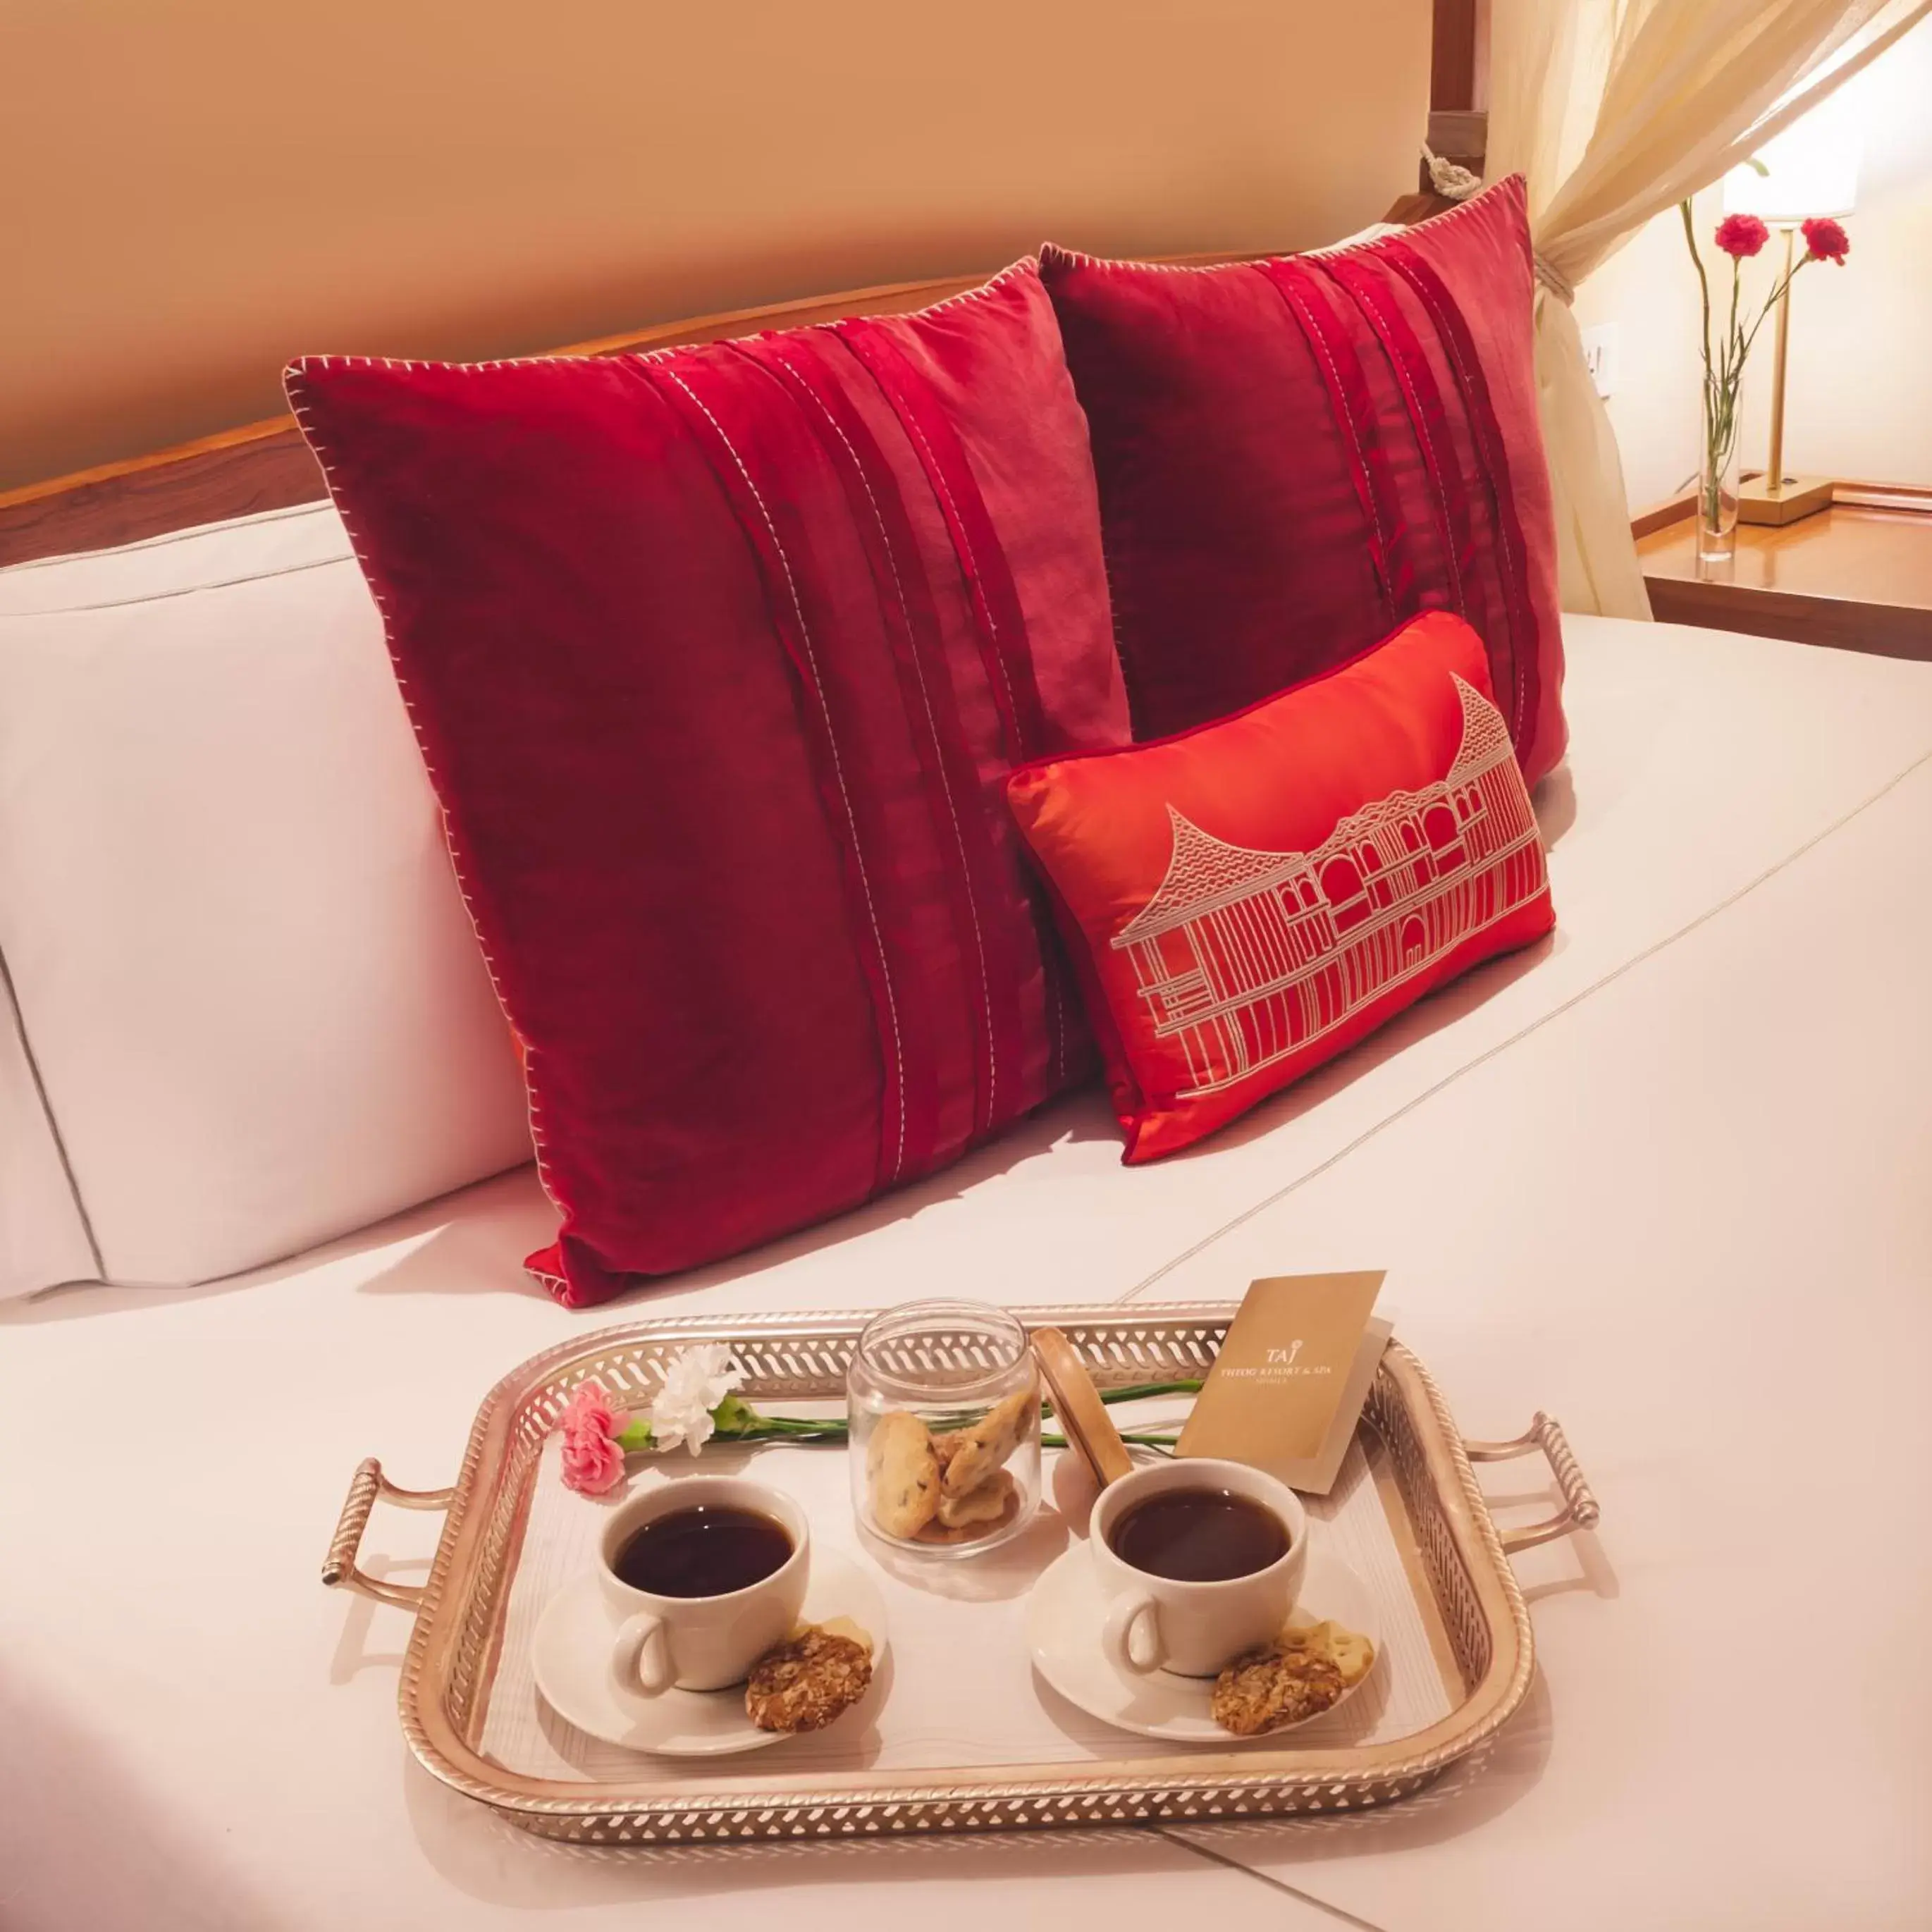 Bed in Taj Theog Resort & Spa Shimla